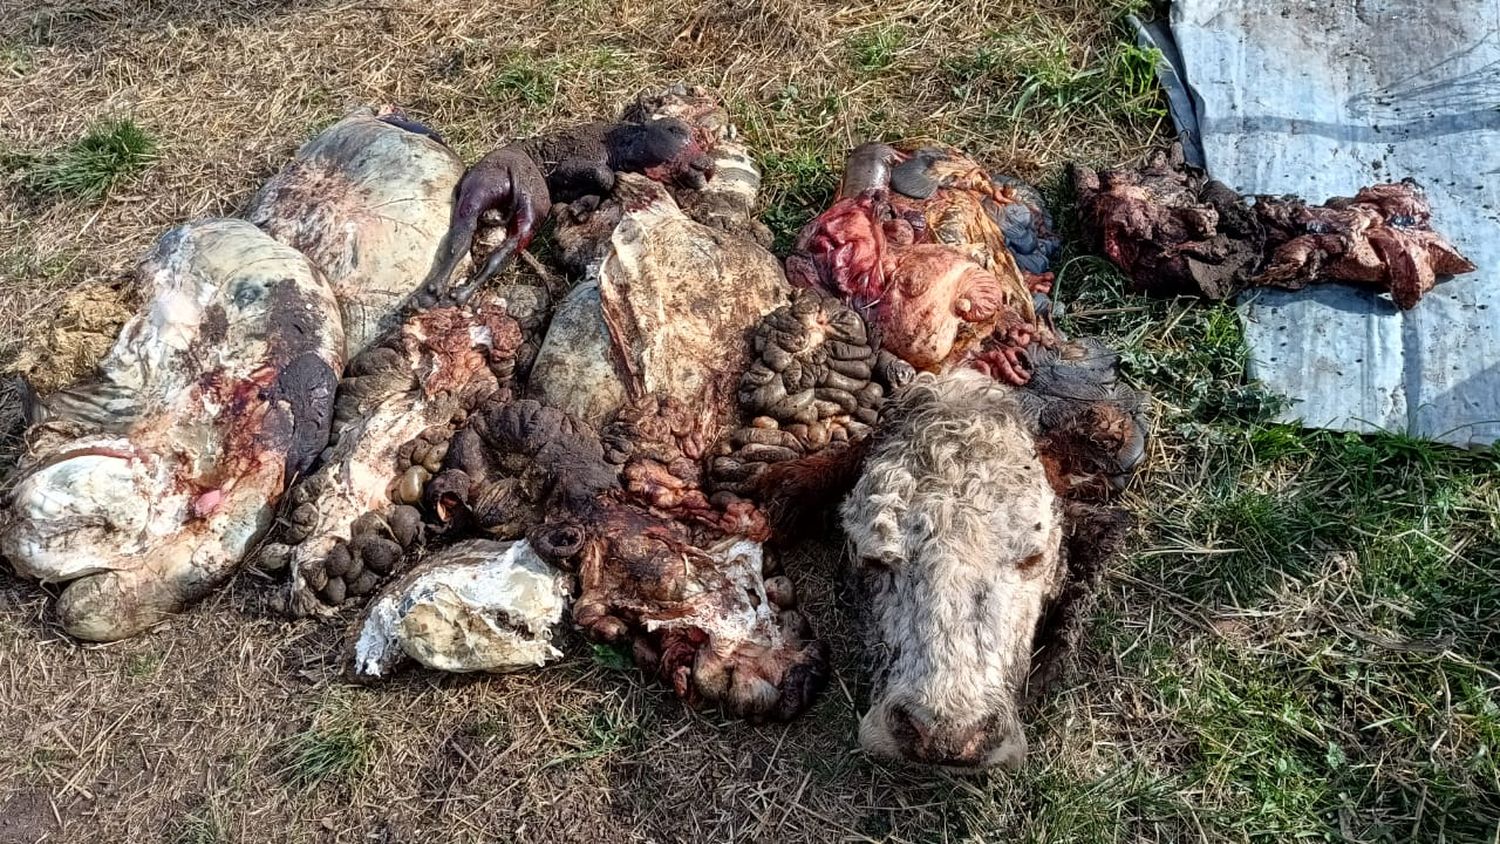 "Es el octavo o noveno robo desde 2019", dijo Ciancaglini, productor rural víctima de la faena de siete animales